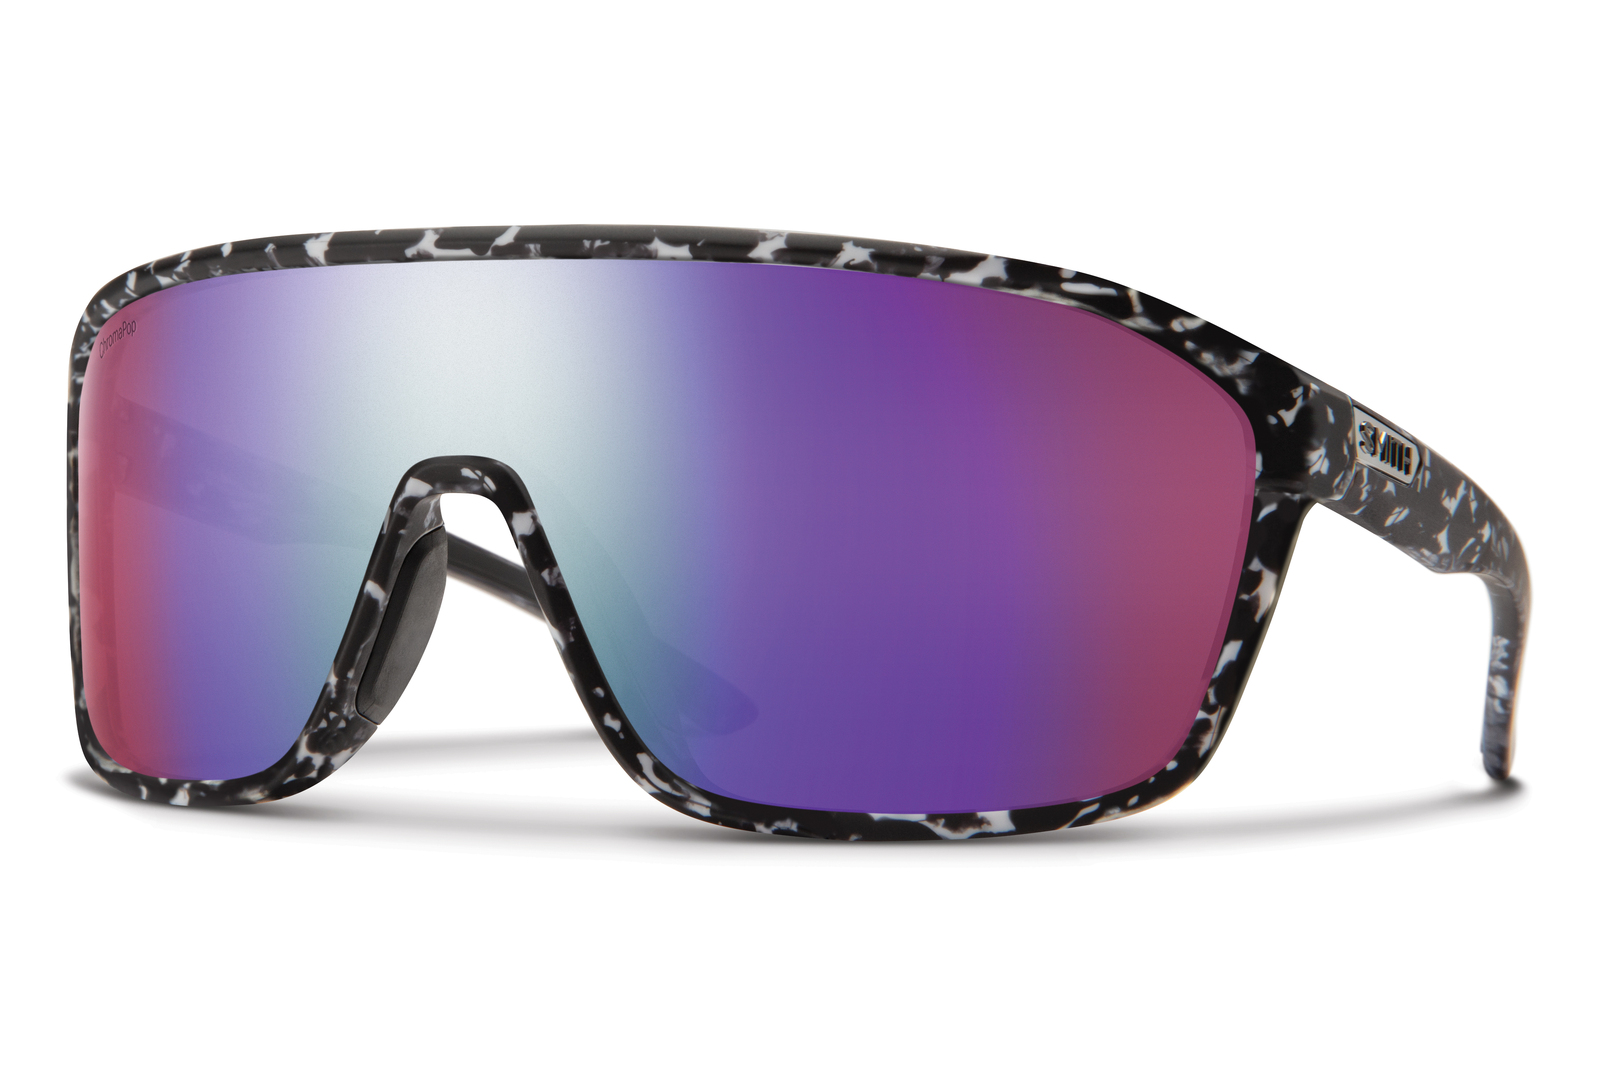 Distiller Sunglasses in Violet Reflex | Native Eyewear®